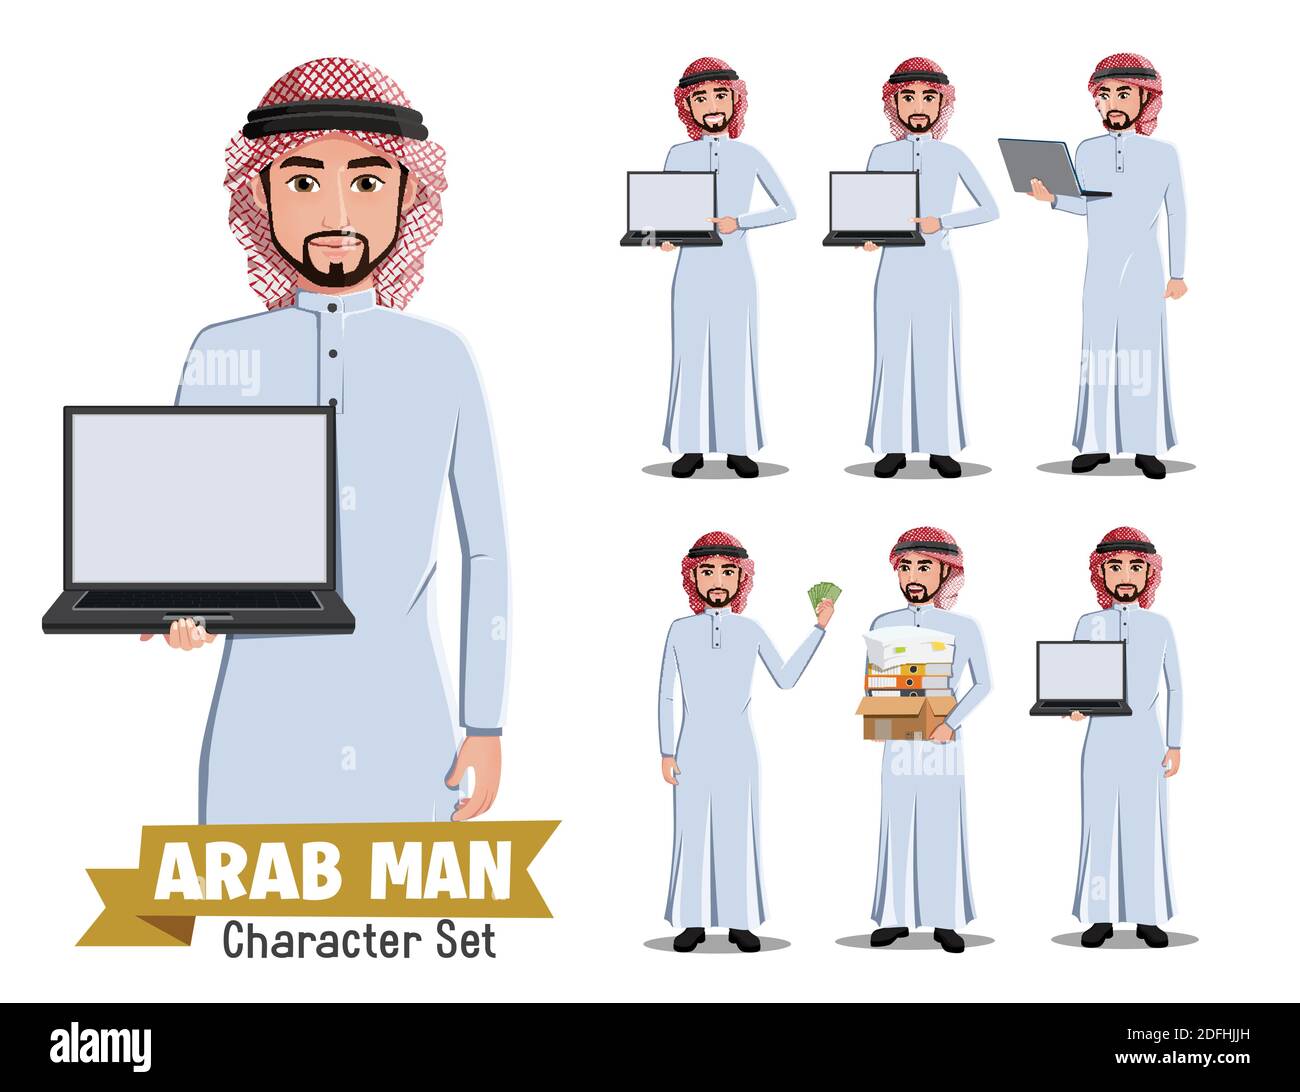 Arab Business man Vektor-Zeichensatz. Saudi-arabische männliche Geschäftsmann Charaktere in verschiedenen Standing Pose und Gesten für arabisch kaufen und verkaufen. Stock Vektor